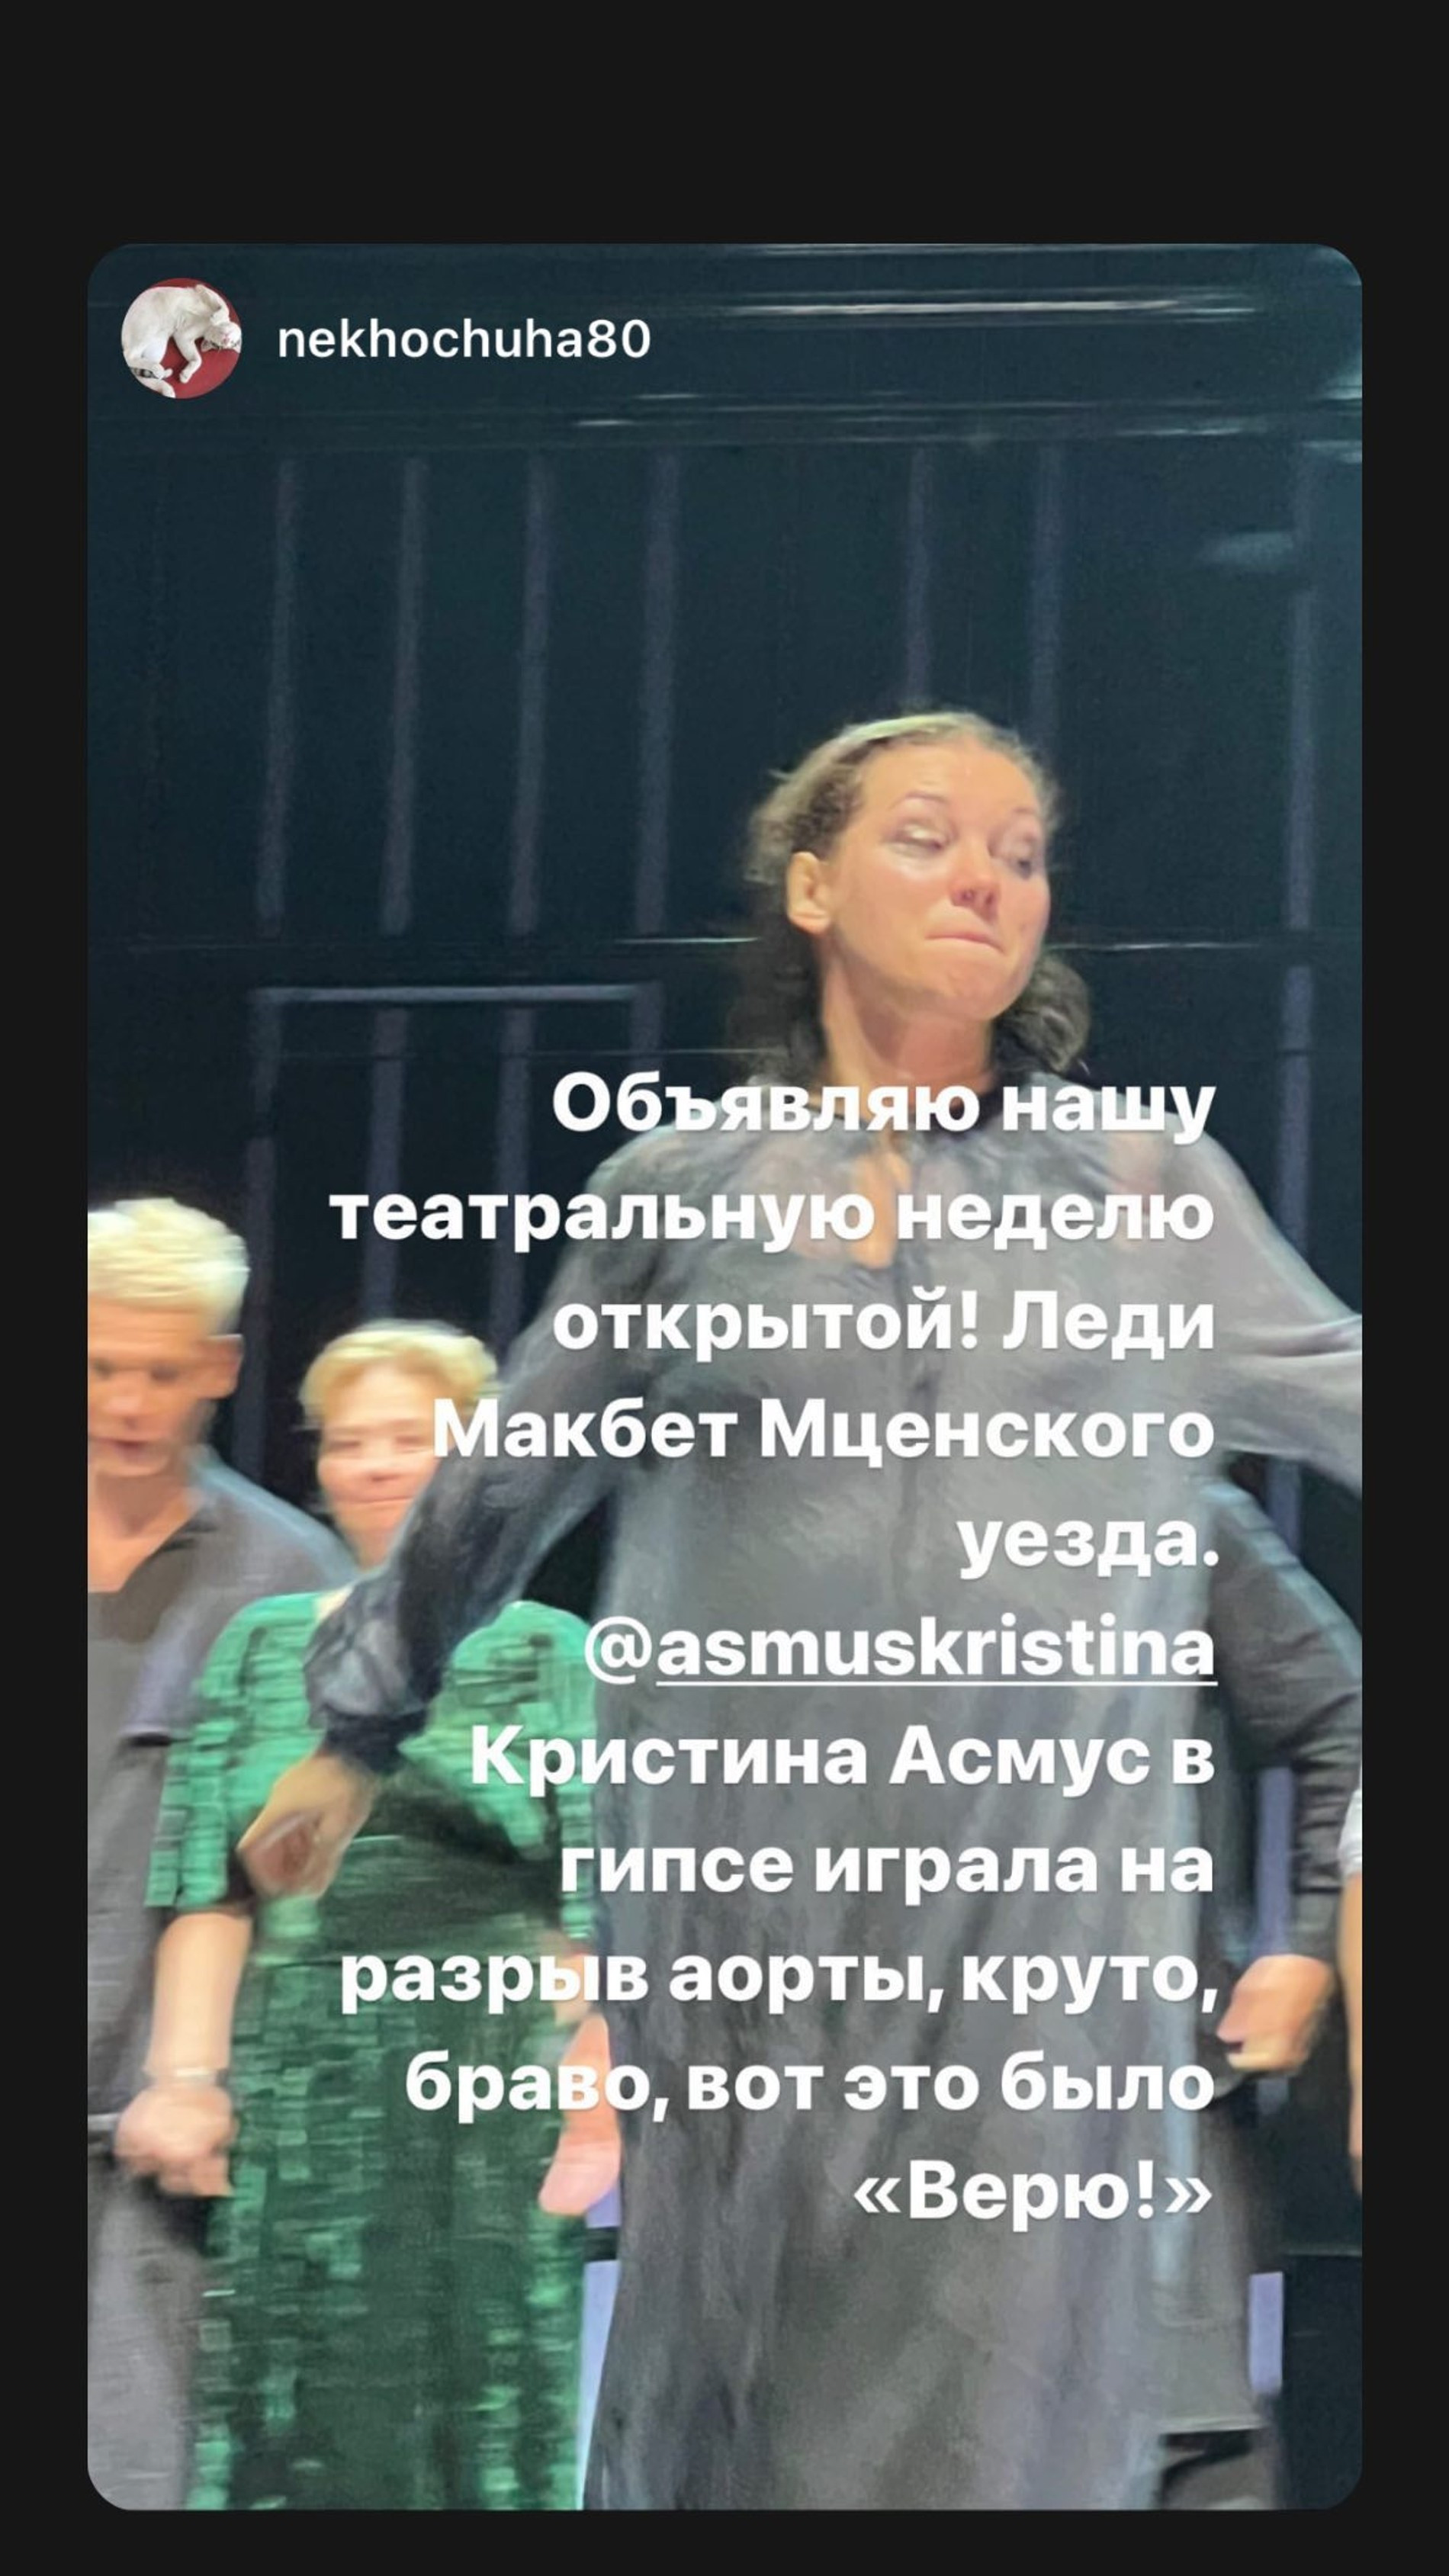 Кристина Асмус играет на сцене со сломанной ногой.  Фото: Инстаграм (запрещен в РФ) @asmuskristina